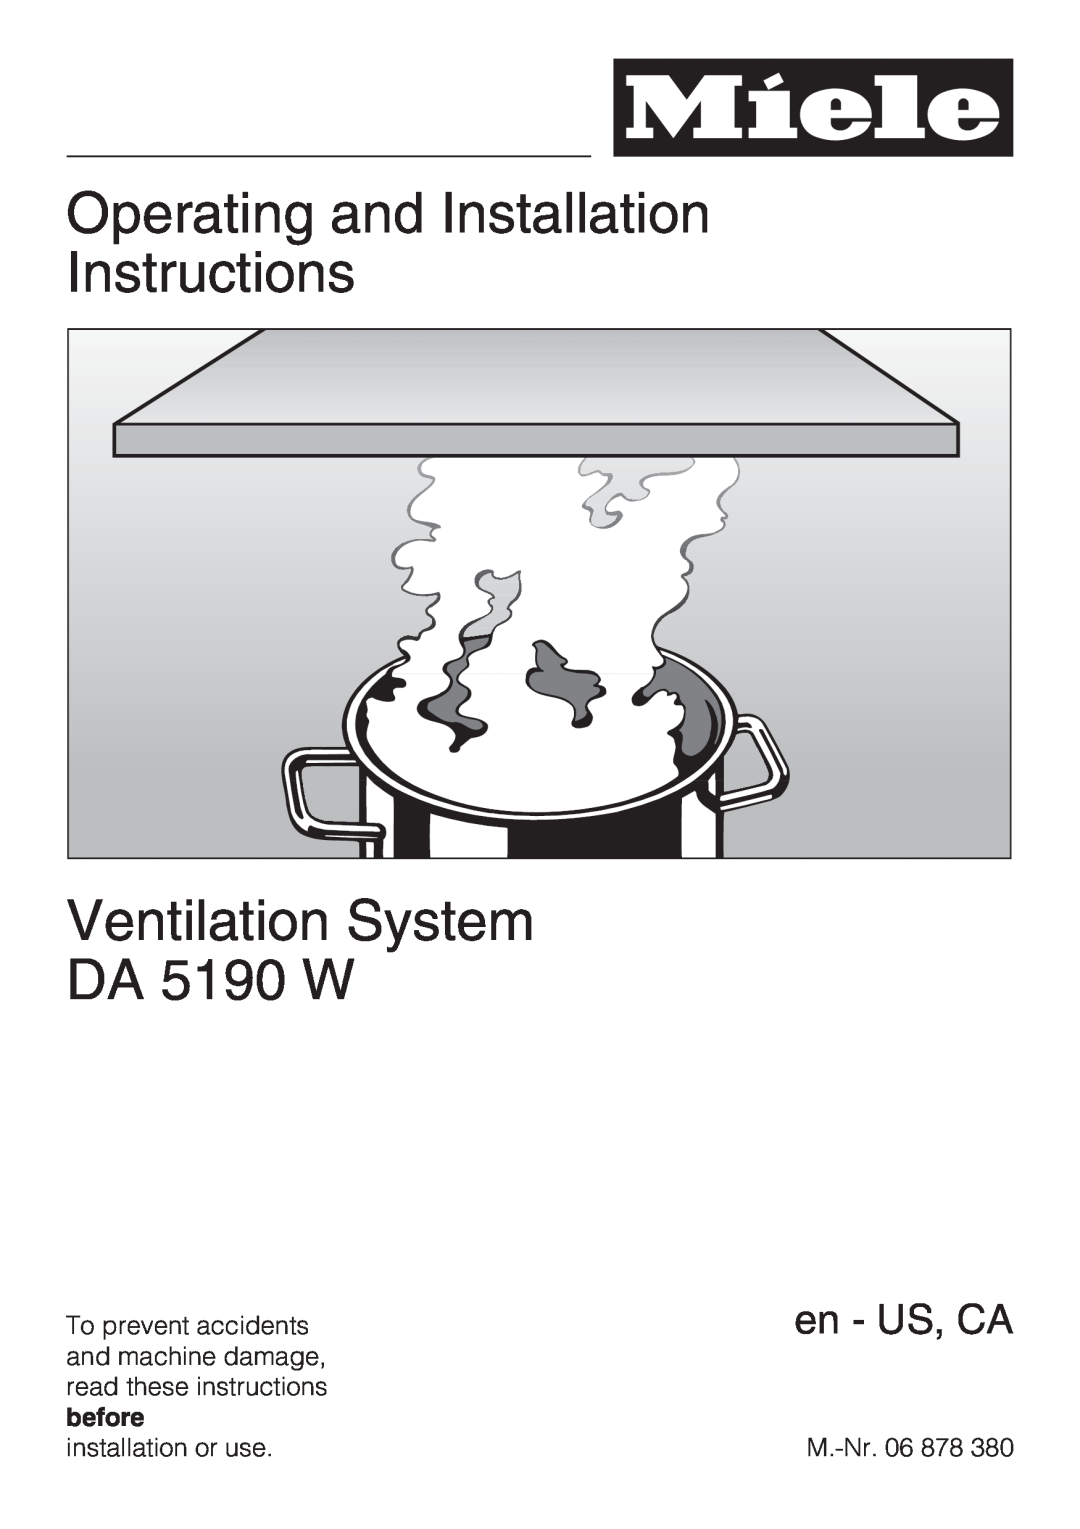 Miele DA5190W installation instructions Operating and Installation Instructions, Ventilation System DA 5190 W, en - US, CA 